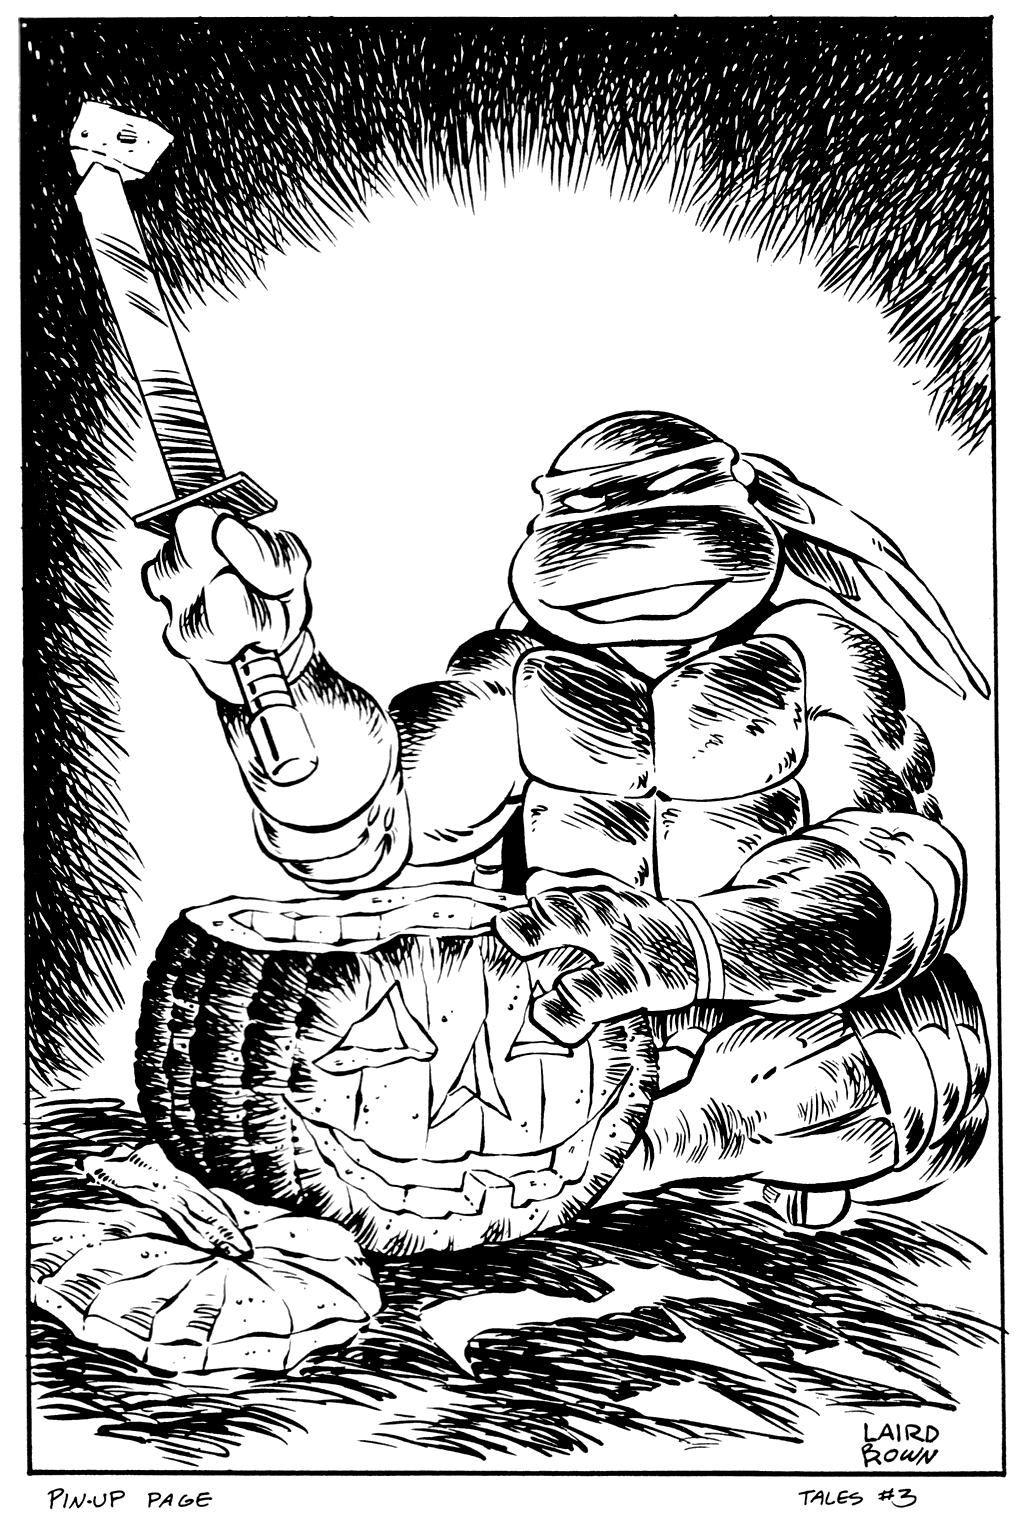 Read online Tales of the Teenage Mutant Ninja Turtles comic -  Issue #3 - 32